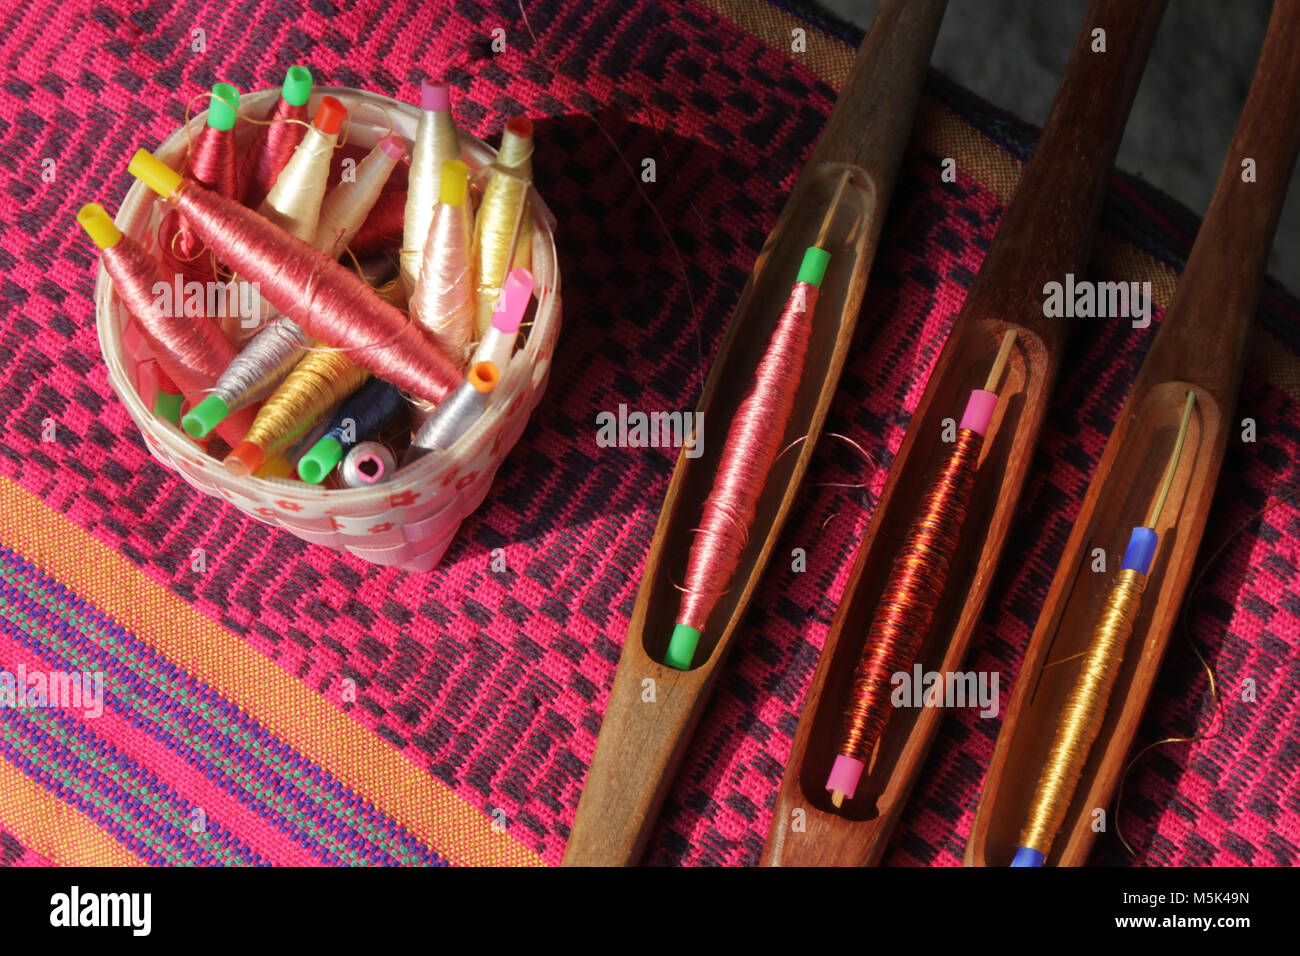 Bobines colorées dans le panier et de canette sur tissu de soie, le tissage traditionnel de la soie thaïlandaise Banque D'Images